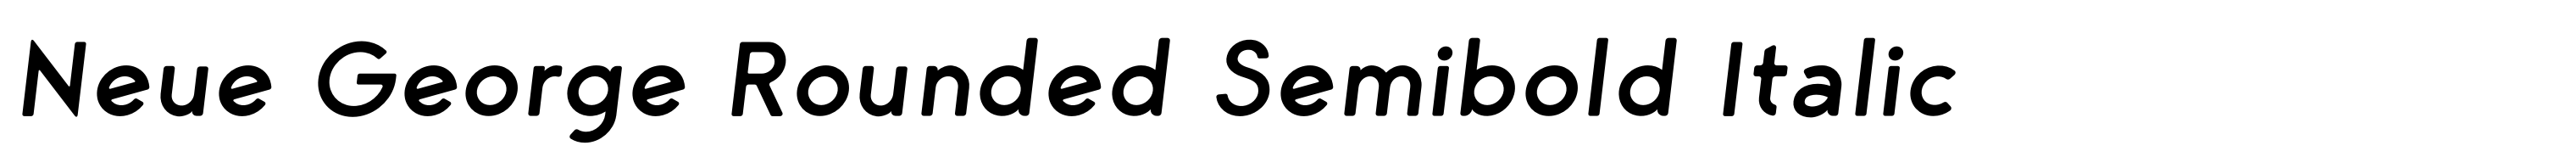 Neue George Rounded Semibold Italic